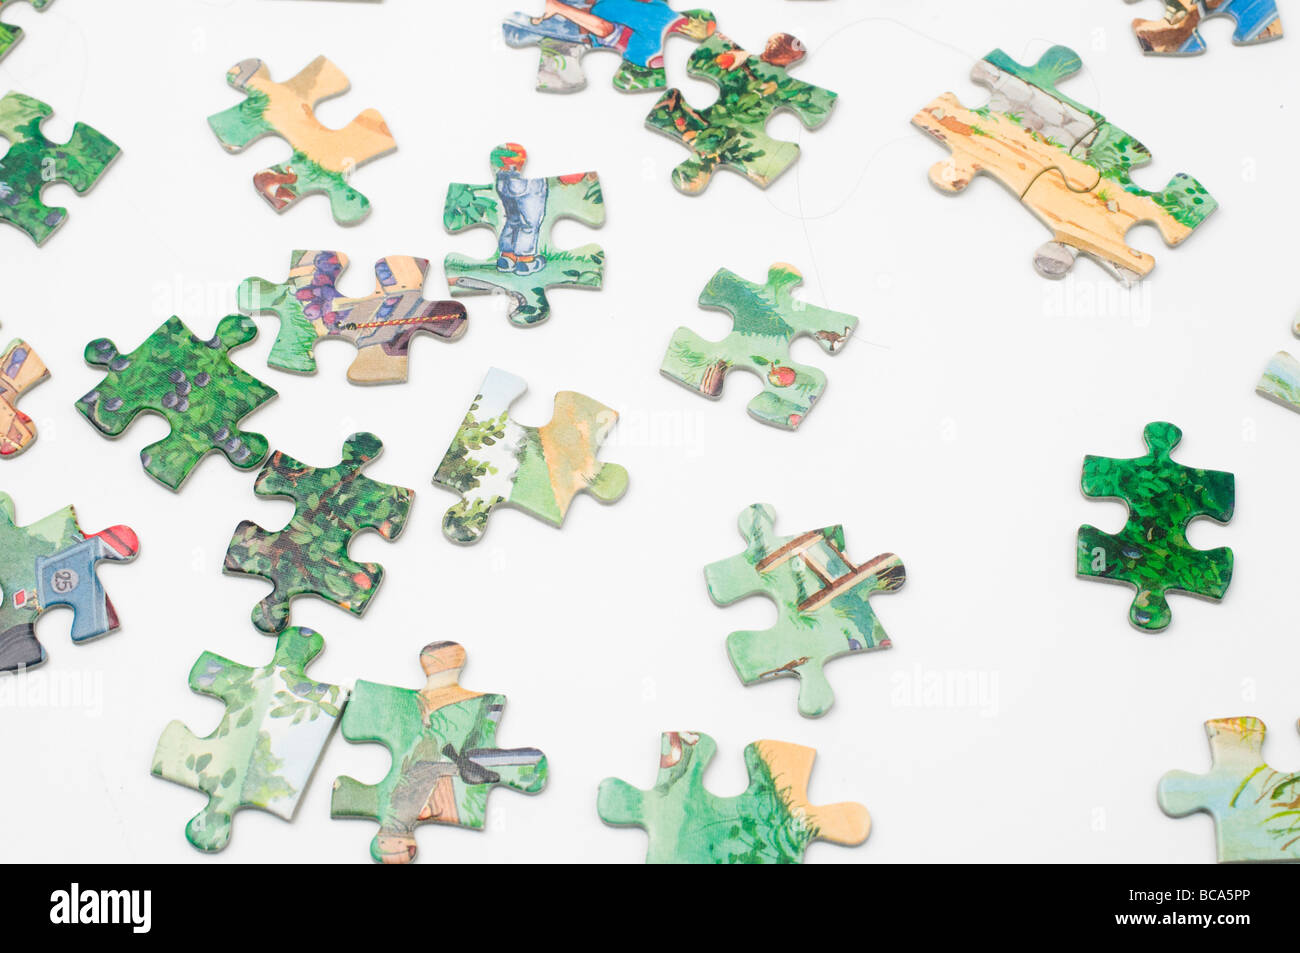 Découpe de pièces de casse-tête Jigsaw sur fond blanc Banque D'Images